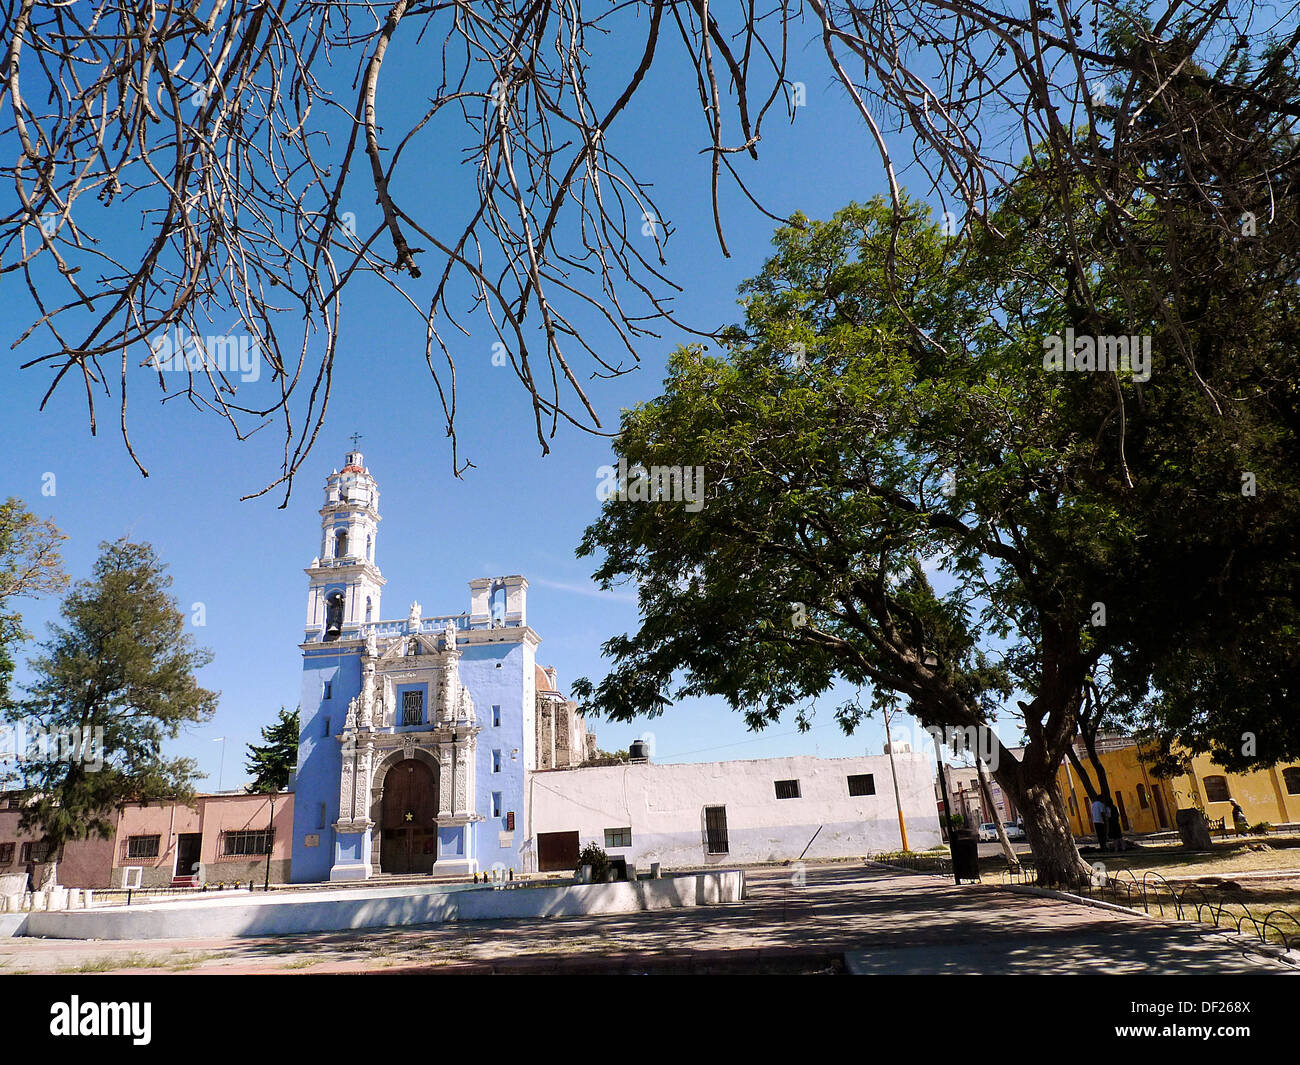 La iglesia de los remedios hi-res stock photography and images - Alamy